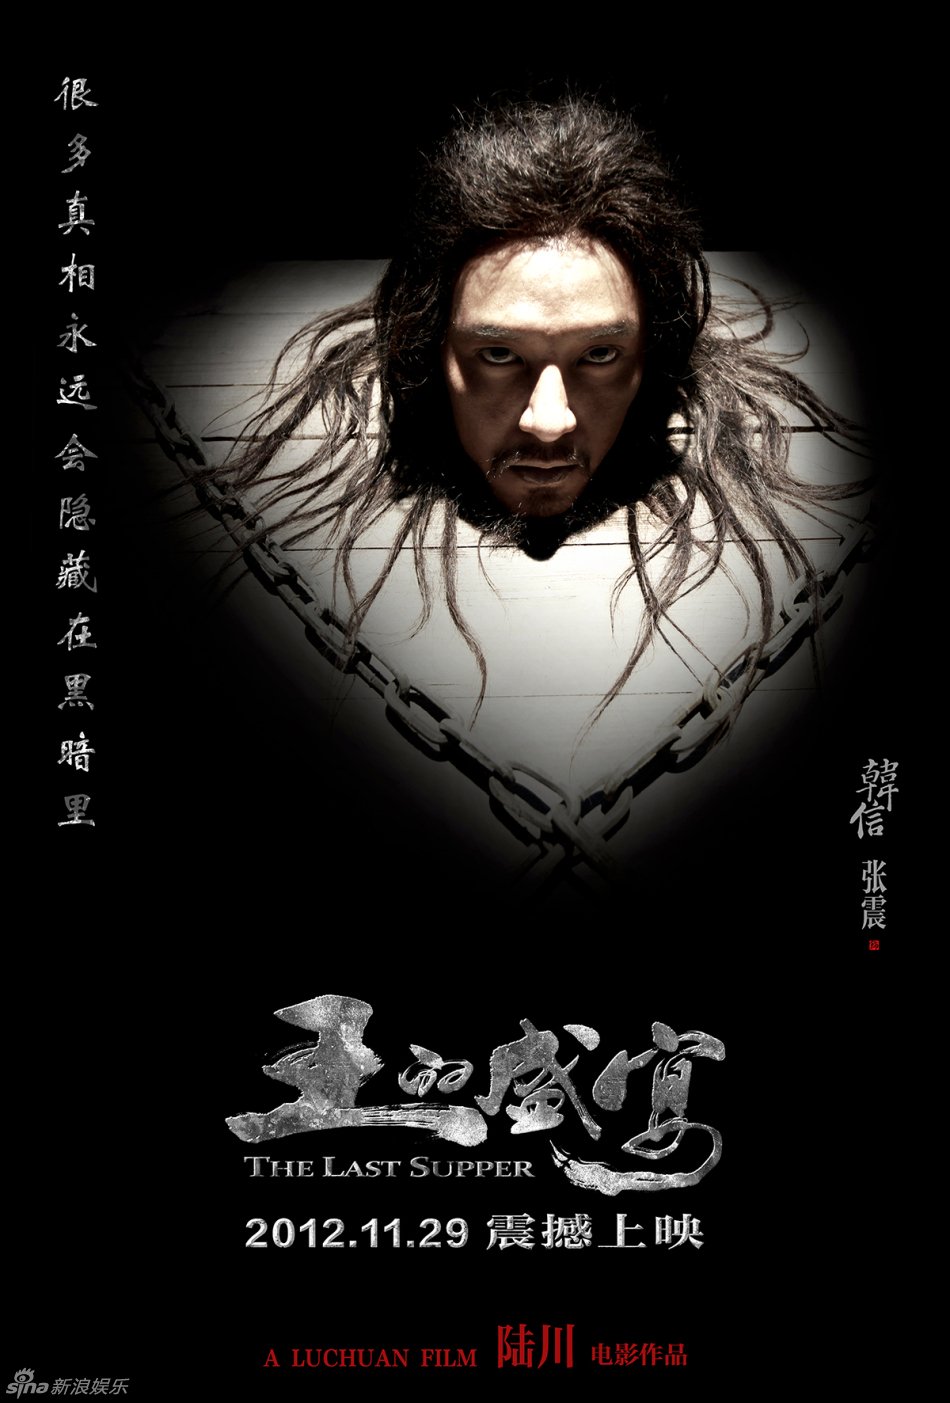 L'affiche originale du film The Last Supper en Chinois